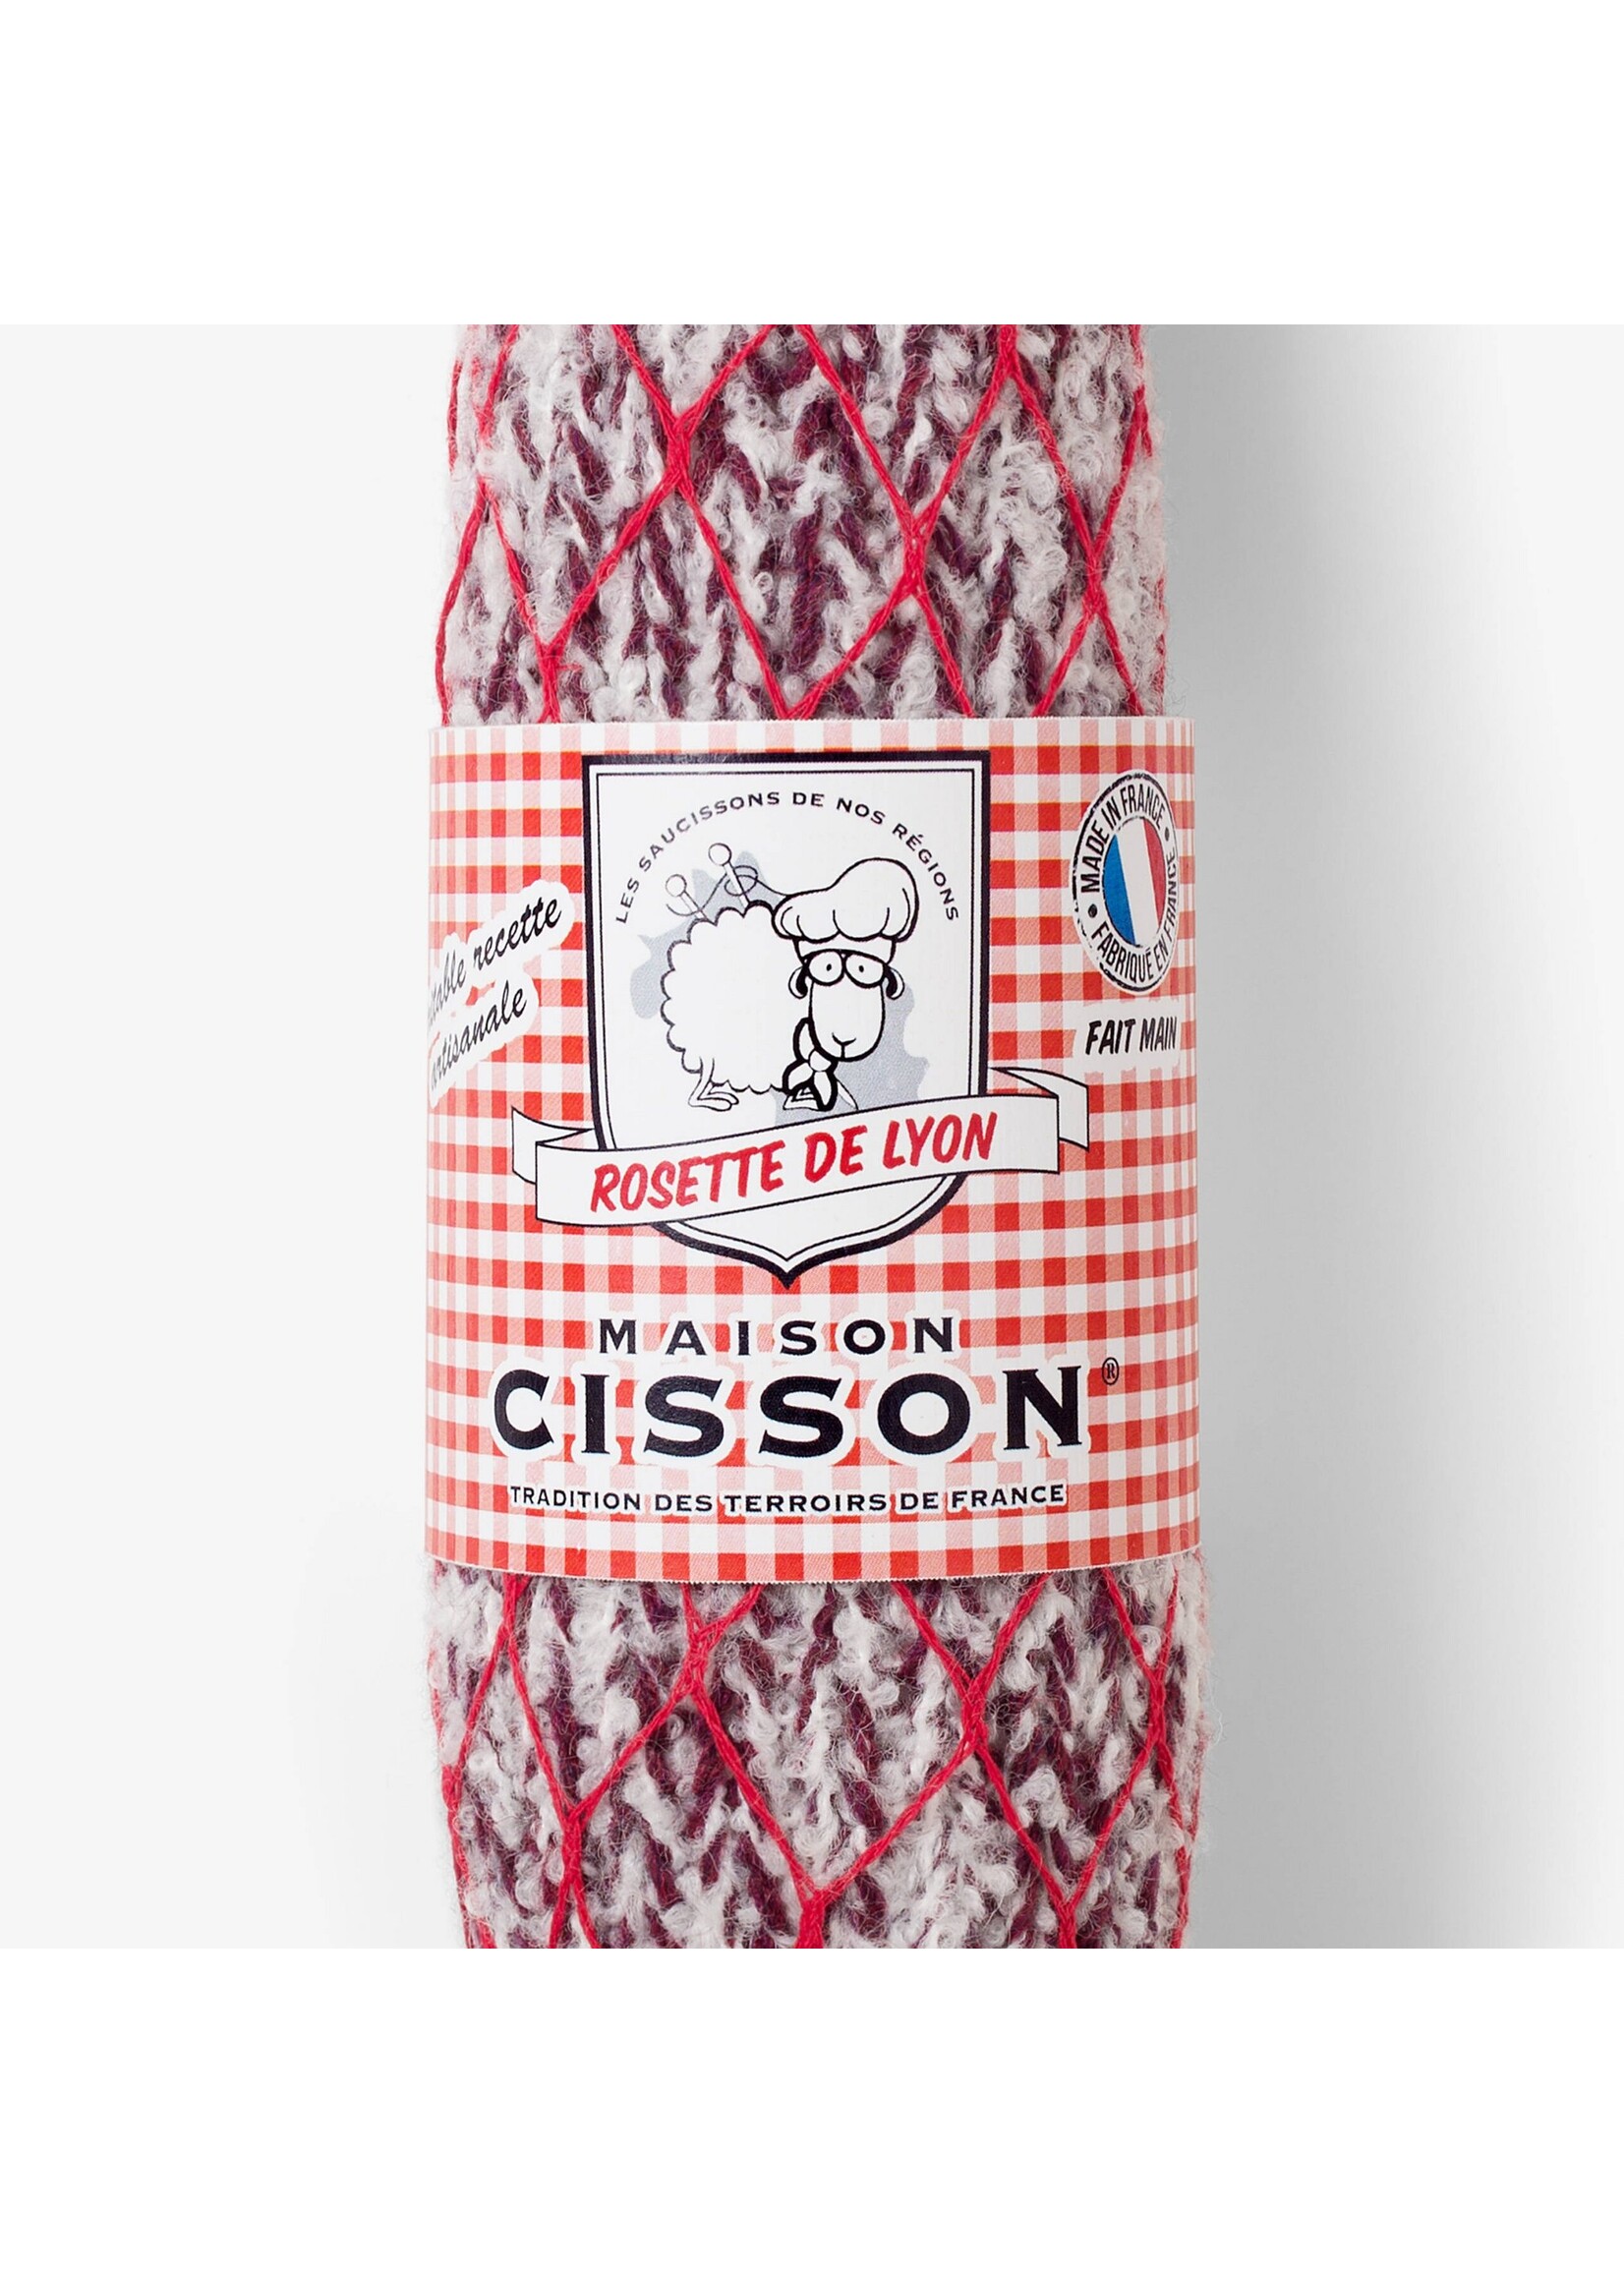 MAISON CISSON "La rosette de Lyon au filet rouge"